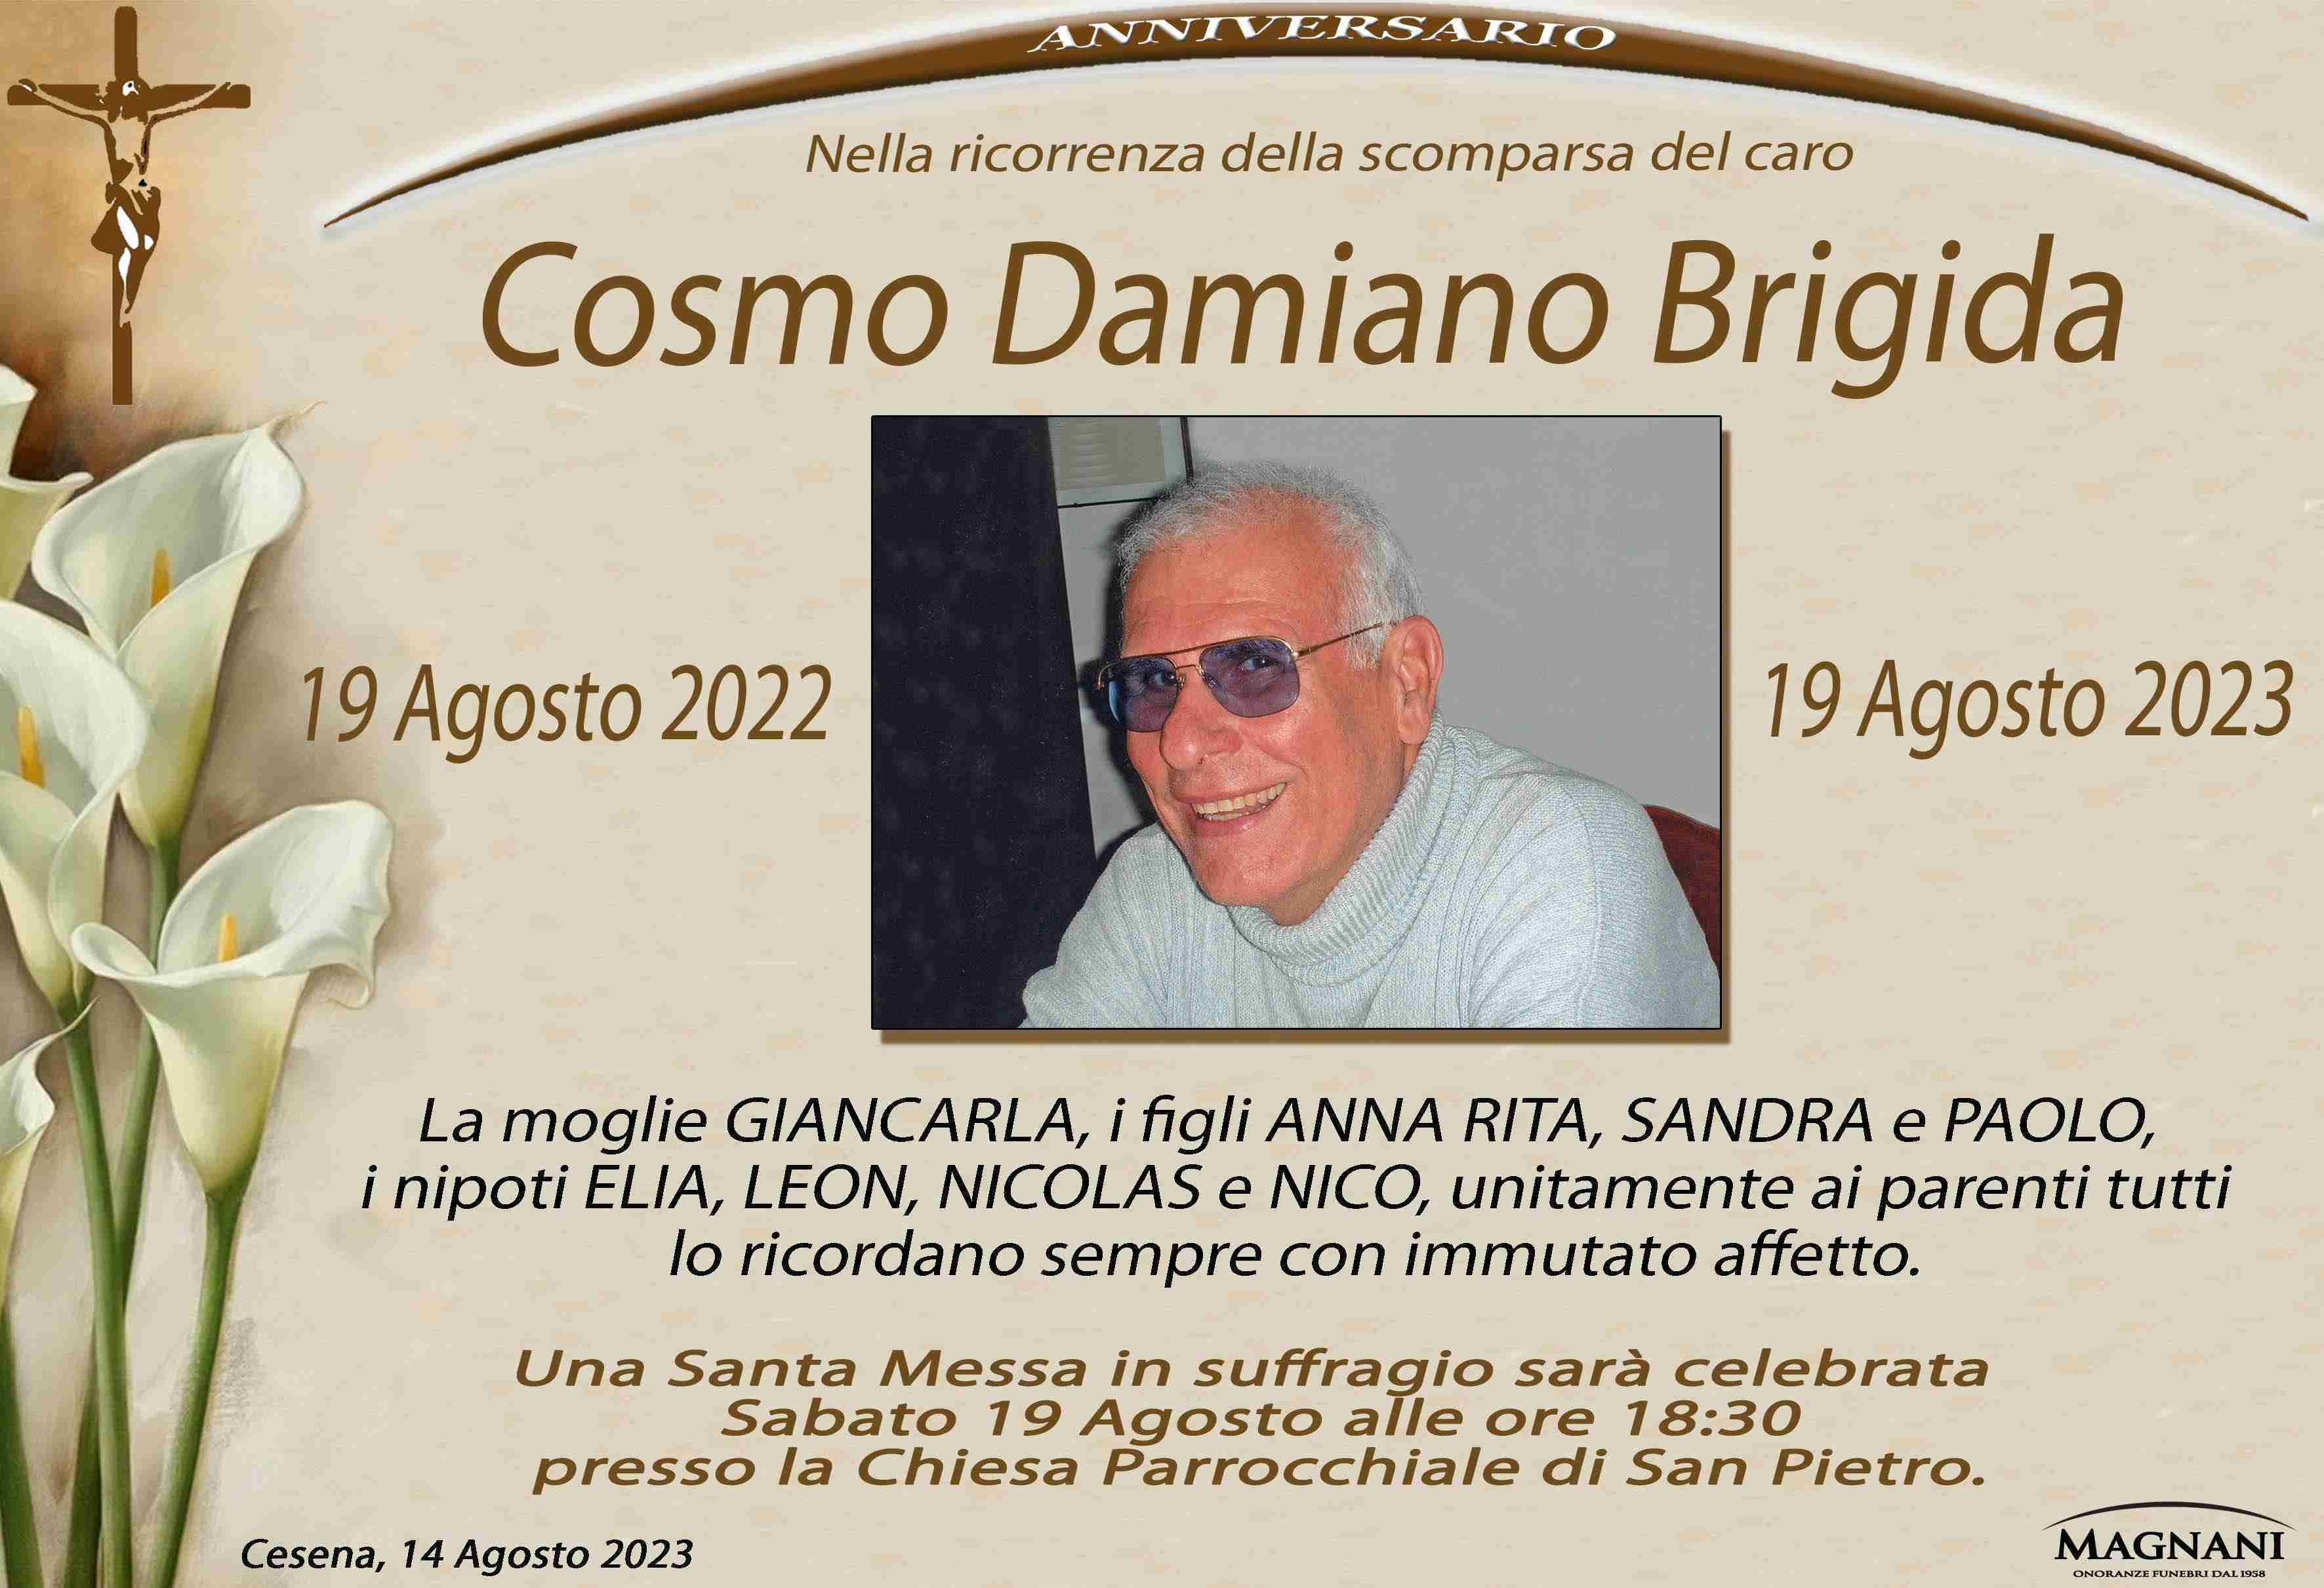 Cosmo Damiano Brigida